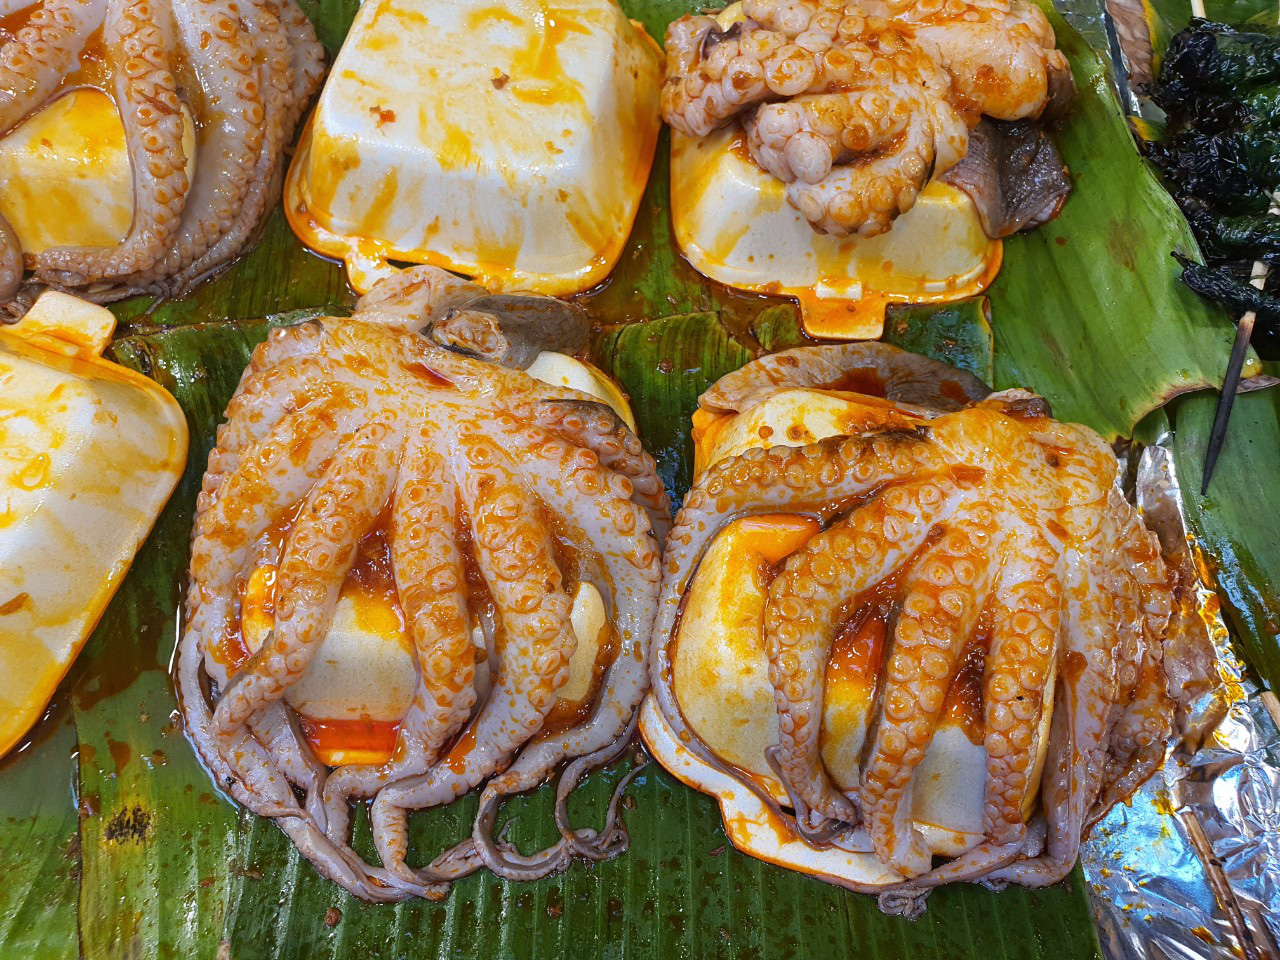 Cả trăm món ăn đặc sản tụ hội ở lễ hội Tết Việt - Ảnh 3.